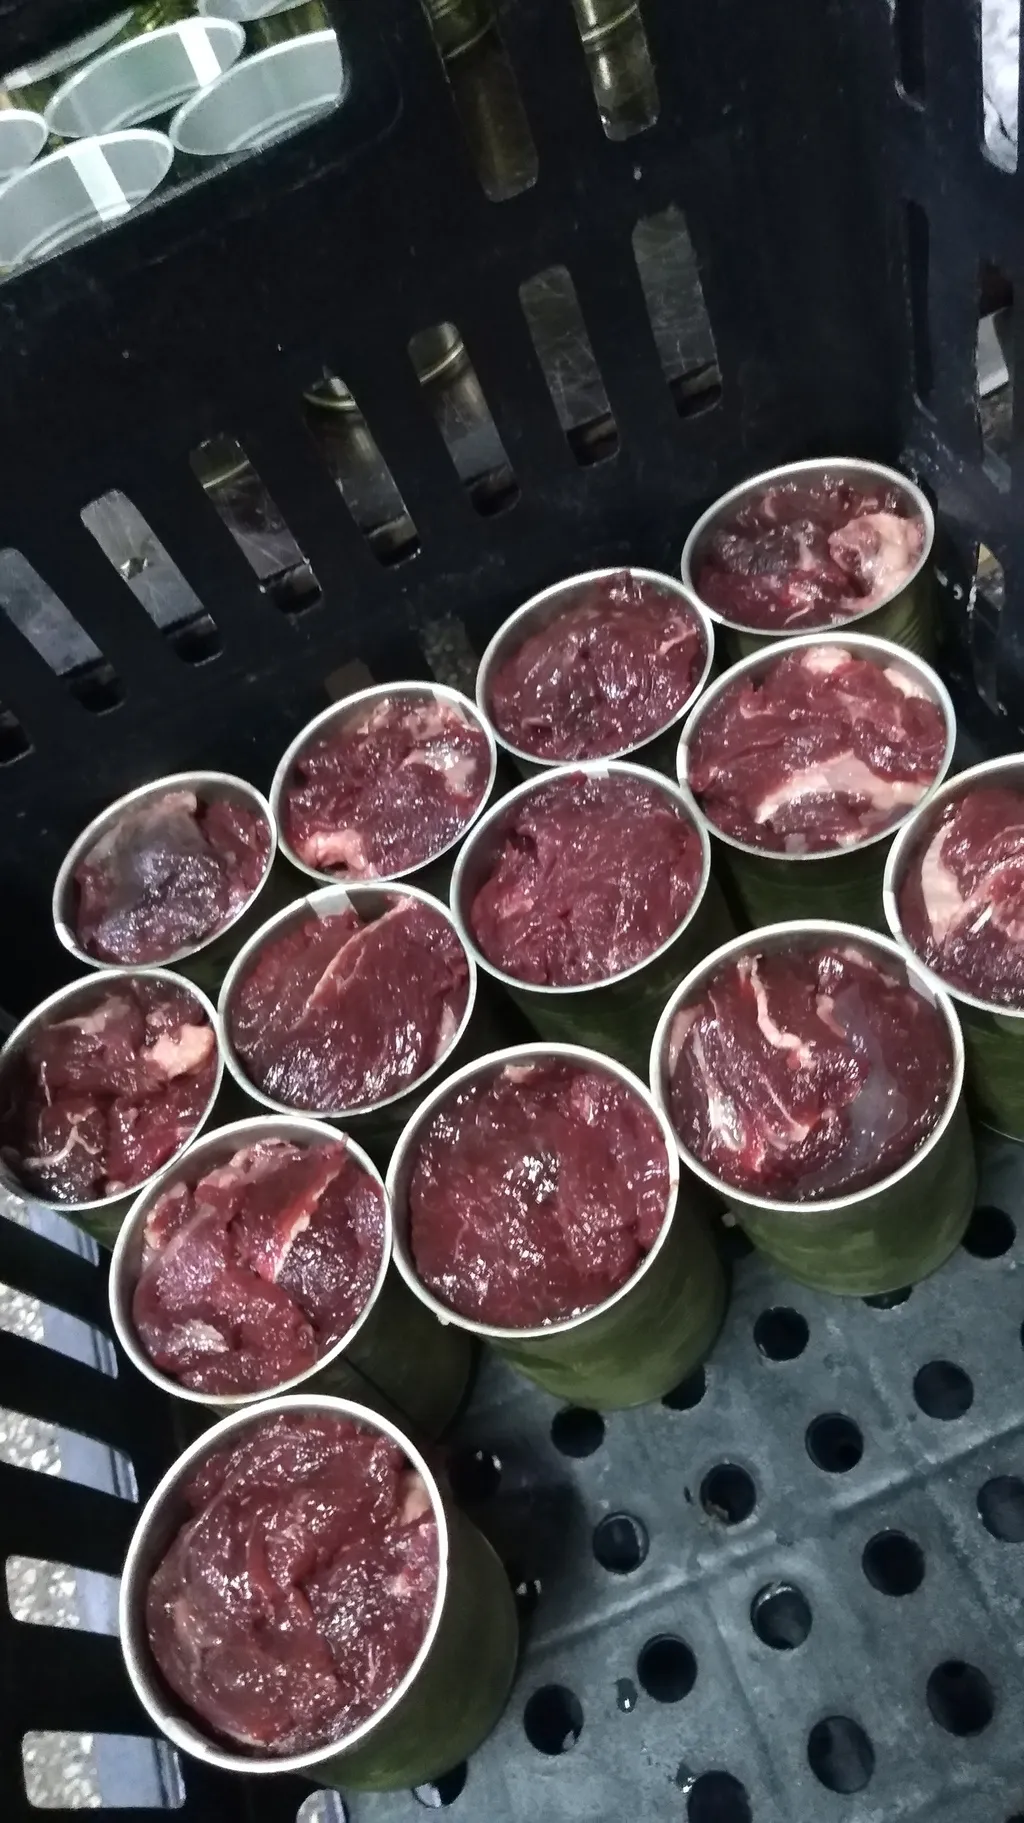 тушенка только мясо молодой говядины в Барнауле и Алтайском крае